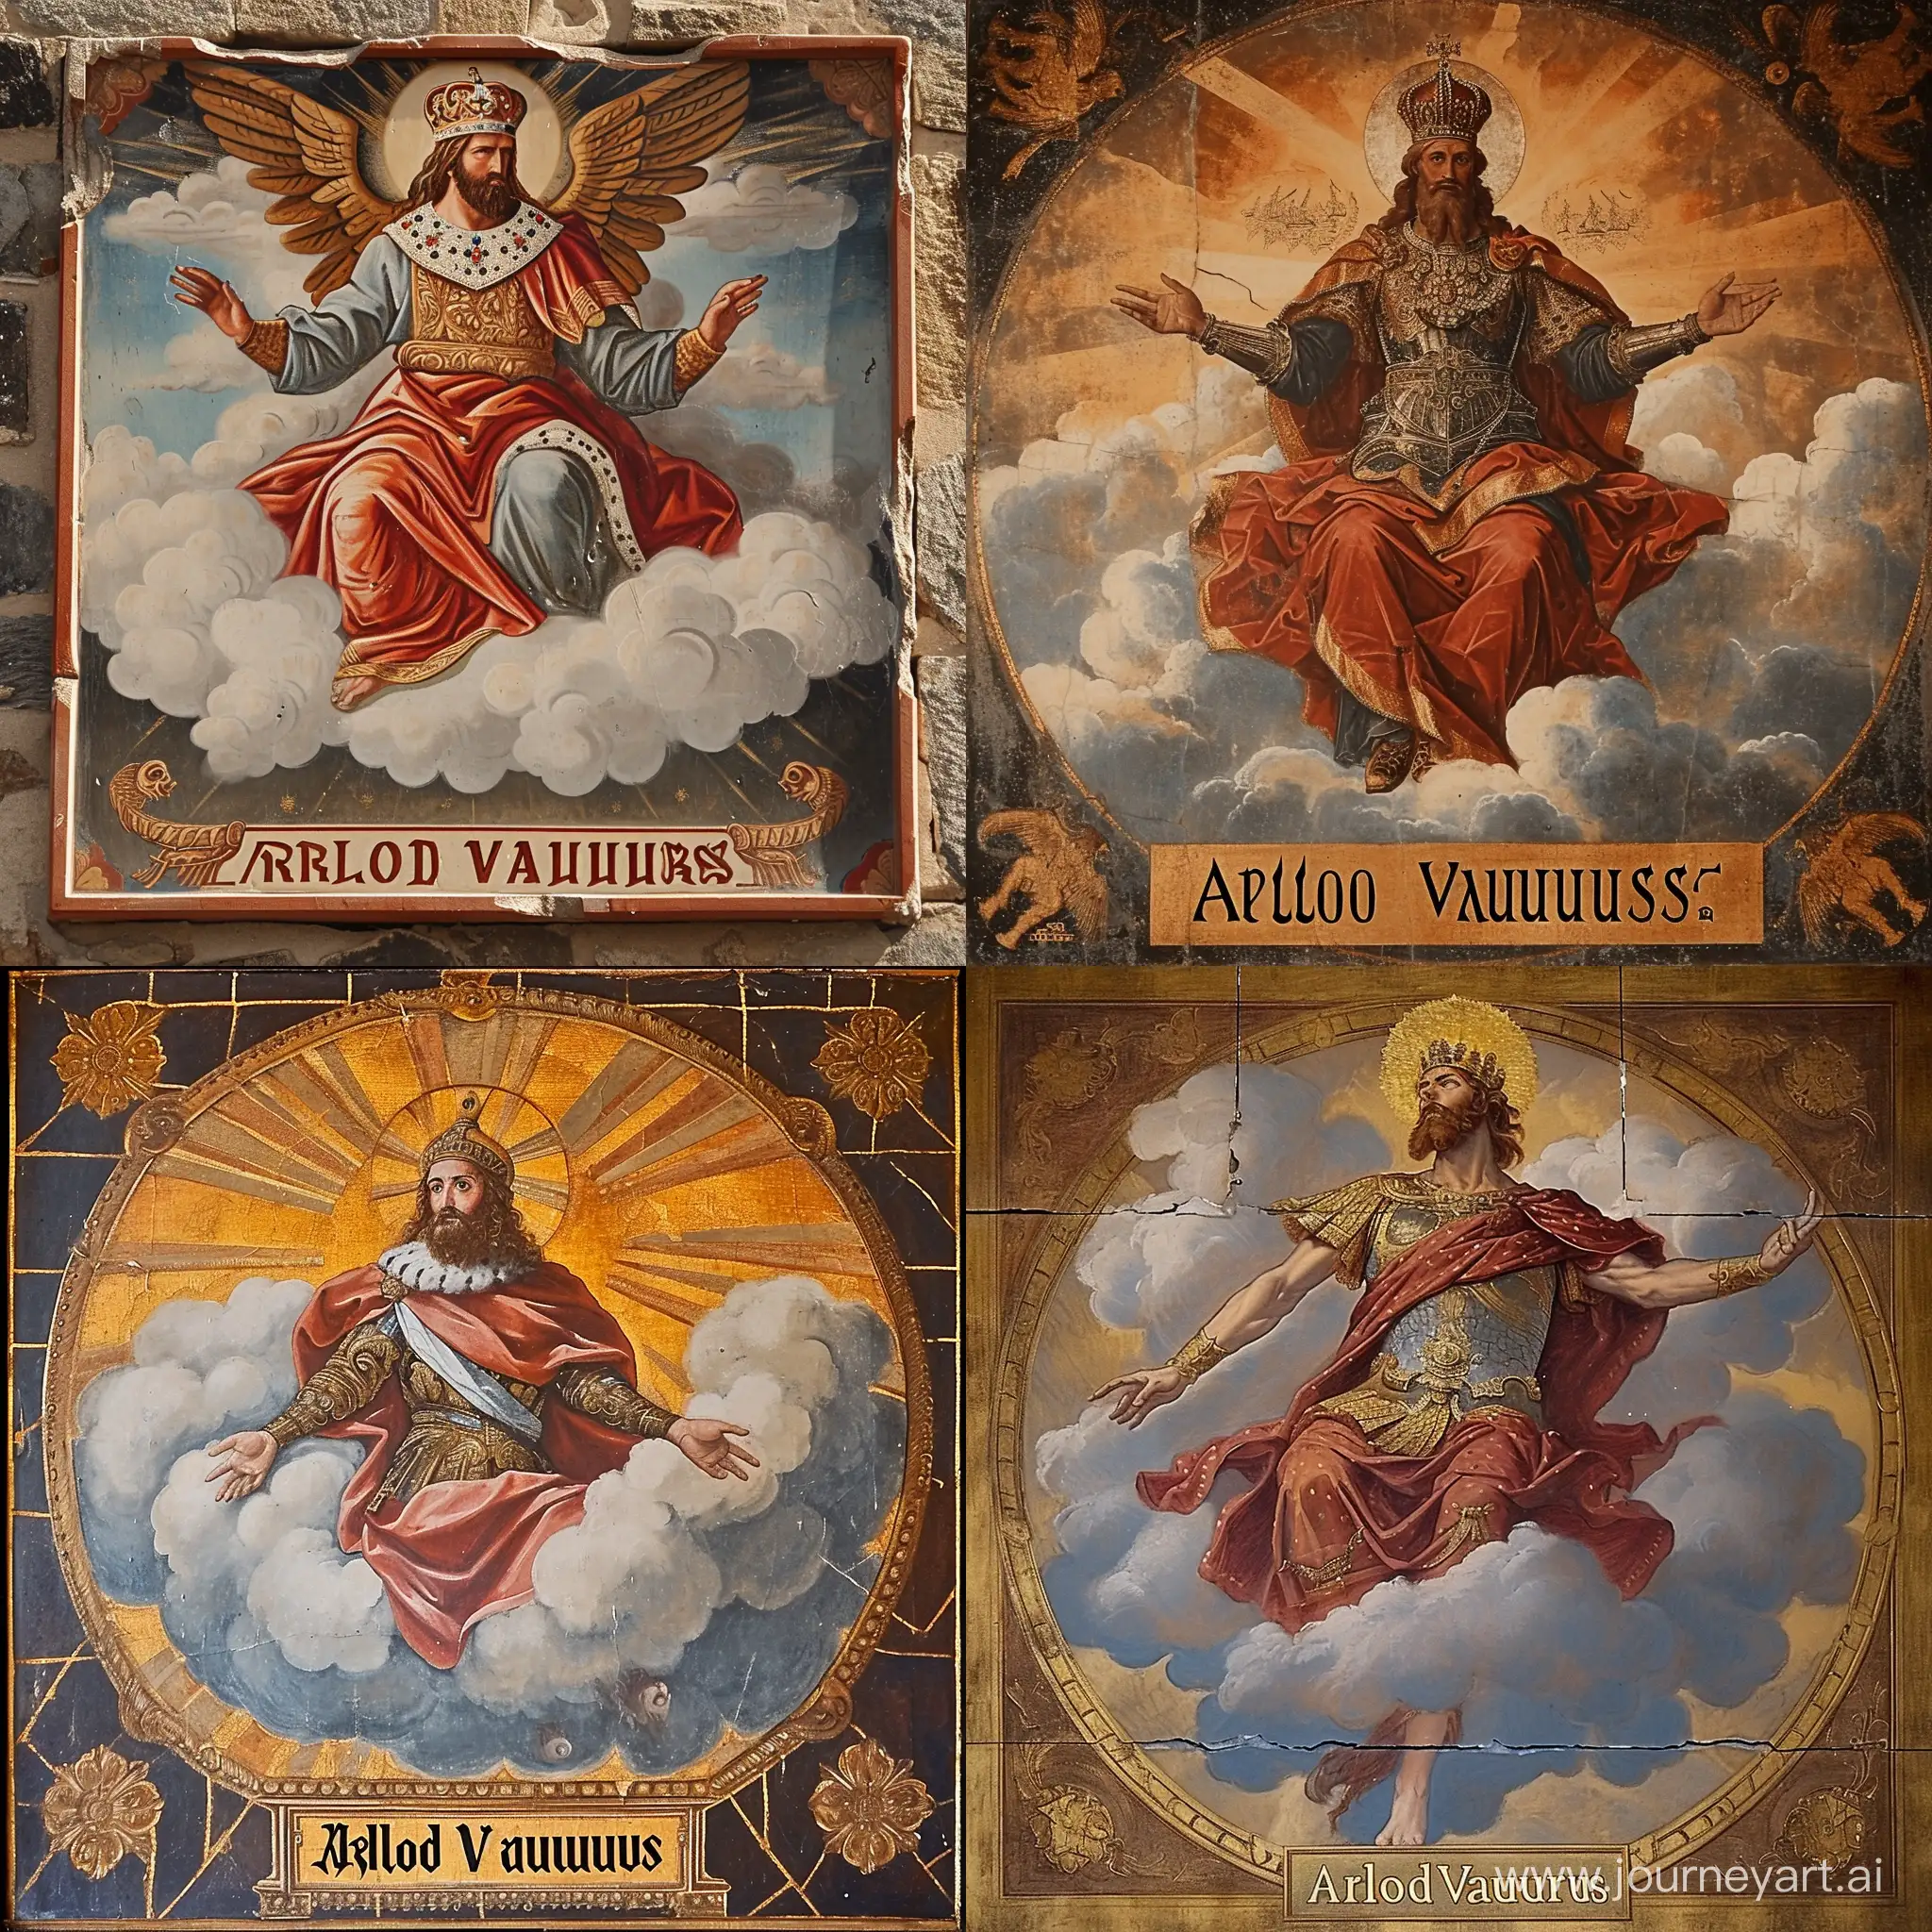 Arlod-Vaurust-Ancient-Style-Royal-Portrait-Above-the-Clouds